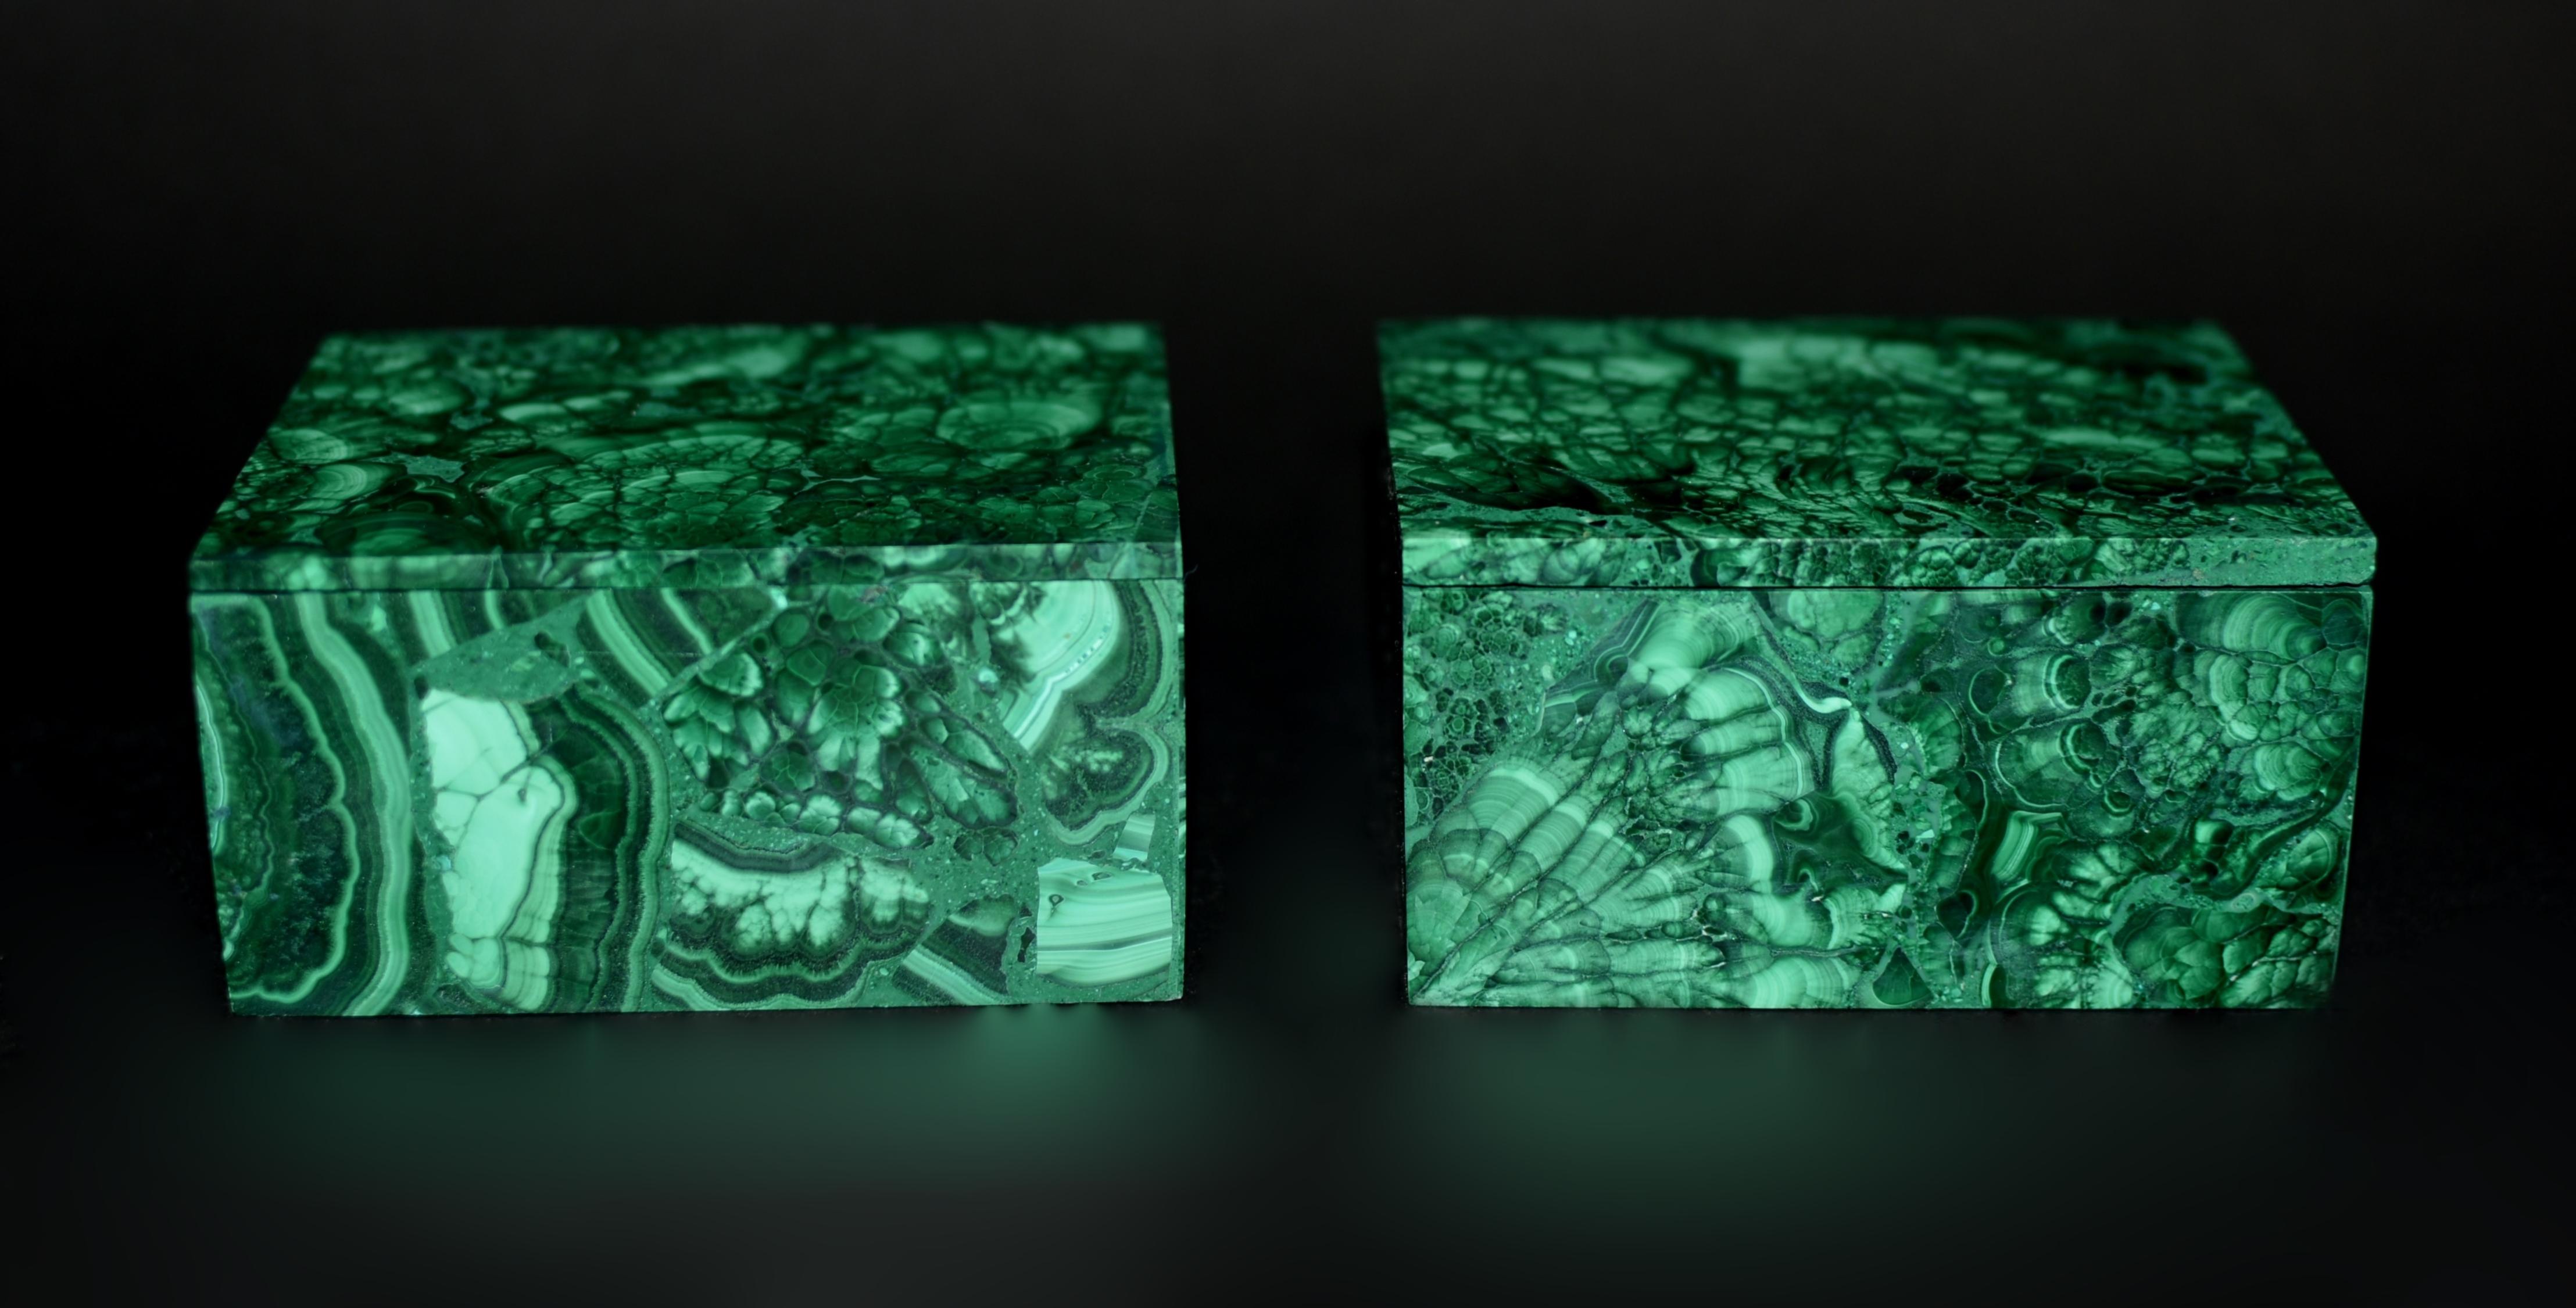 Une paire de magnifiques boîtes en malachite de grade AAA avec un fantastique motif de queue de dinde. La malachite va du vert clair au vert foncé, les plus recherchées présentant des anneaux concentriques et des tourbillons. Cette paire